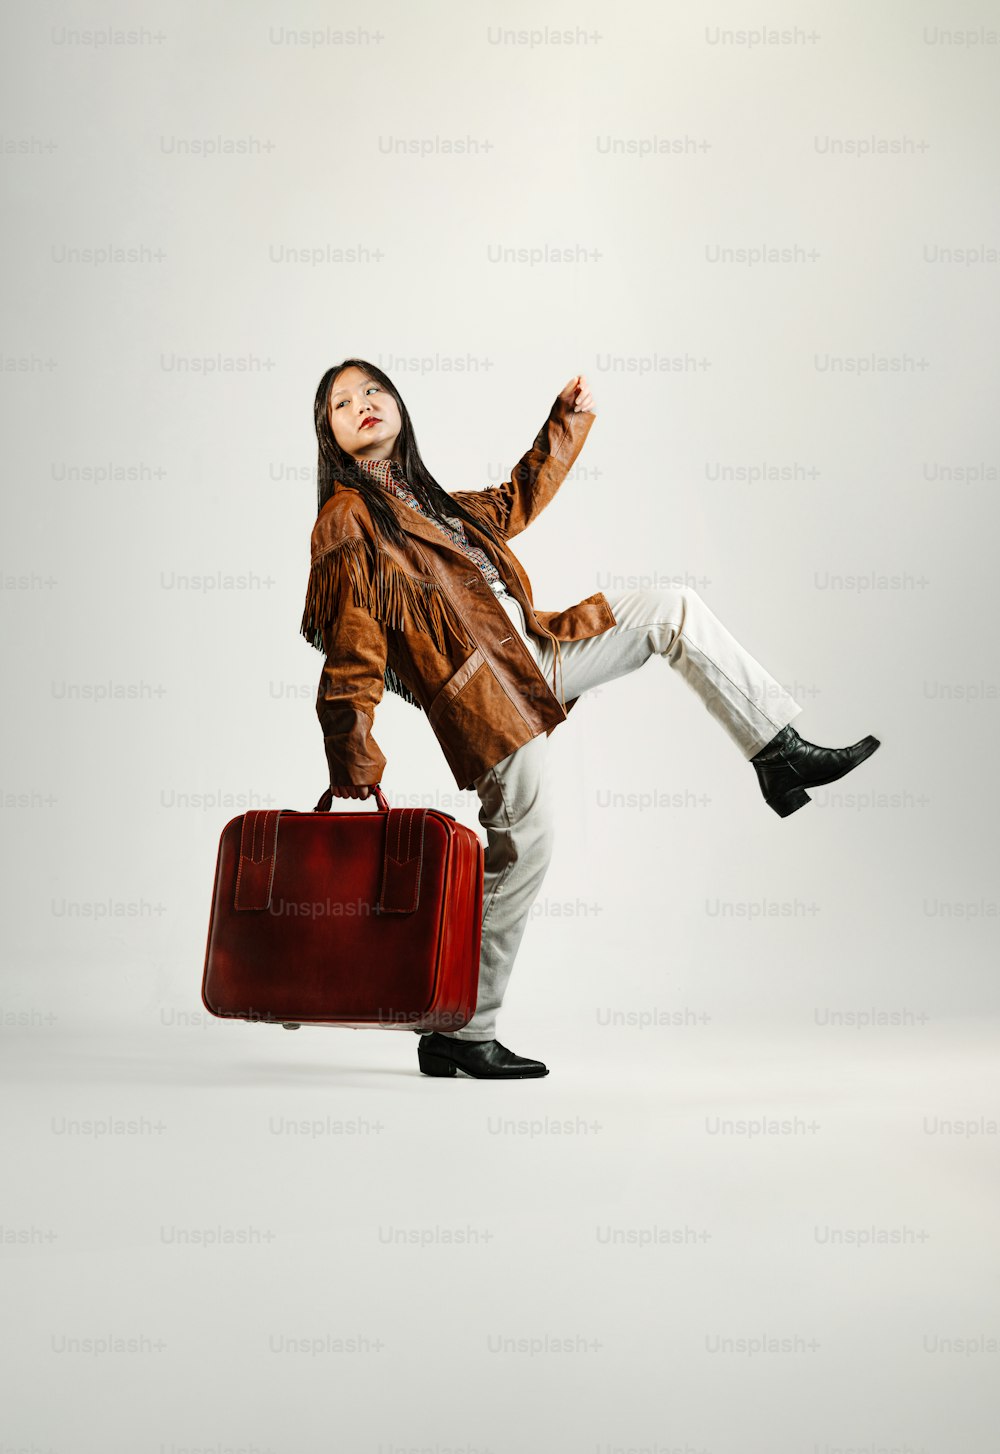 茶色のジャケットを着た女性が赤いスーツケースを抱えている